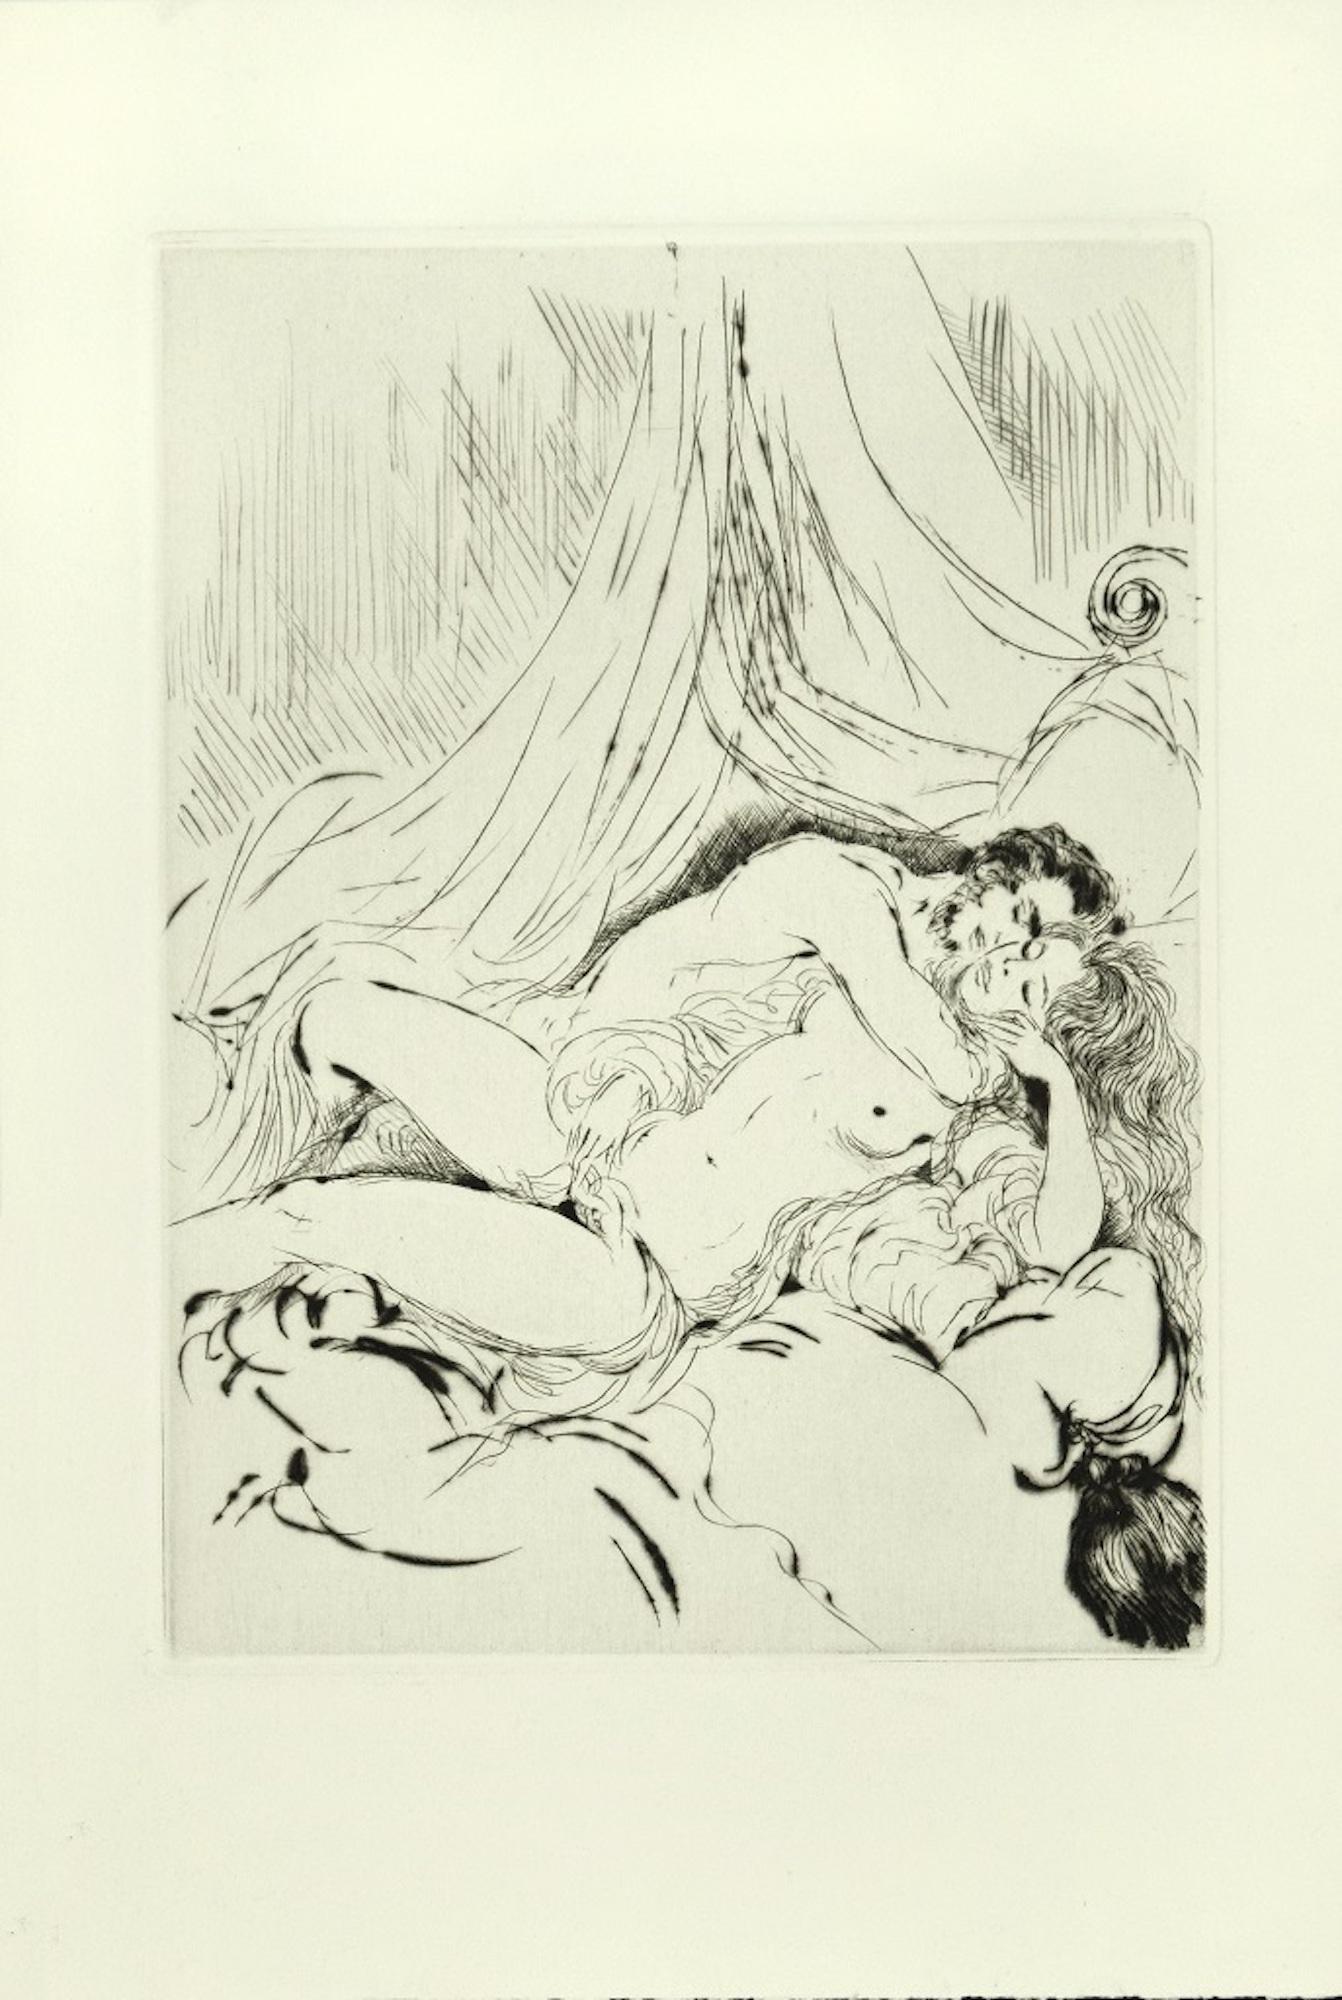 Comédie sexuelle - Affiche originale d'eau-forte à la pointe sèche de A. Doré - fin 1900